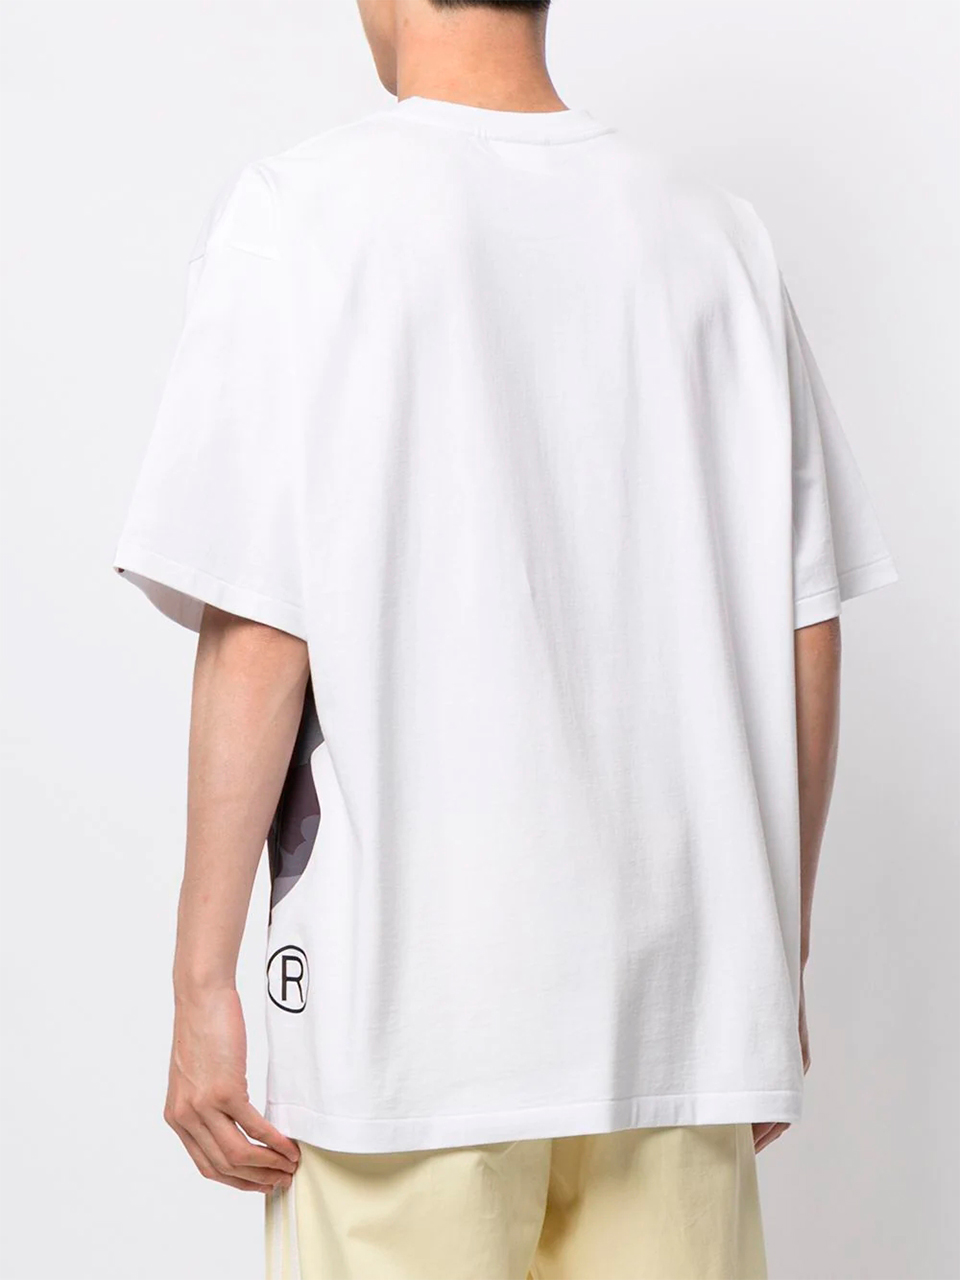 Imagem de: Camiseta BAPE Branca com Logo Grande